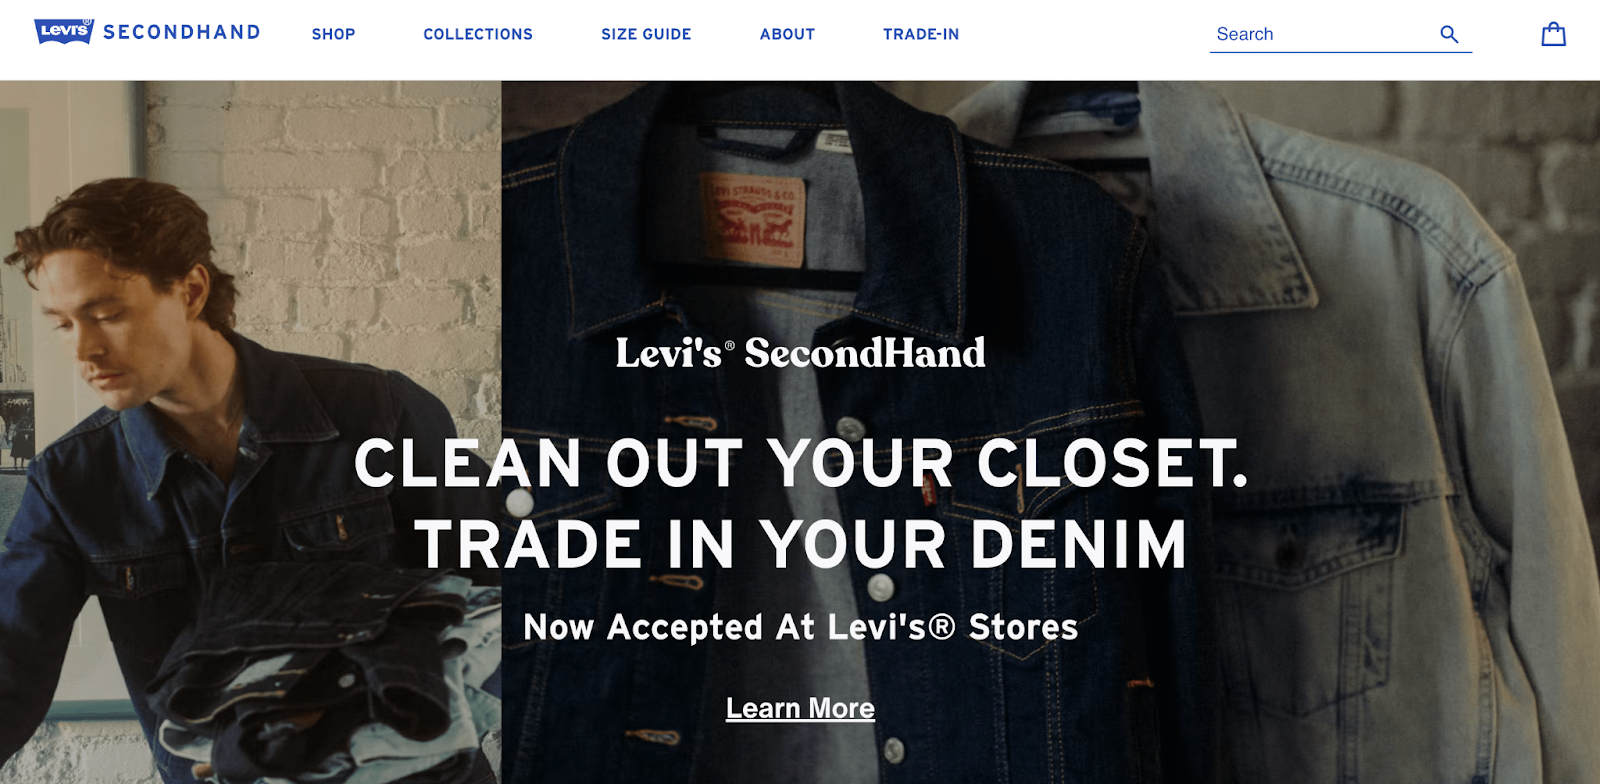 Levi's SecondHand shop